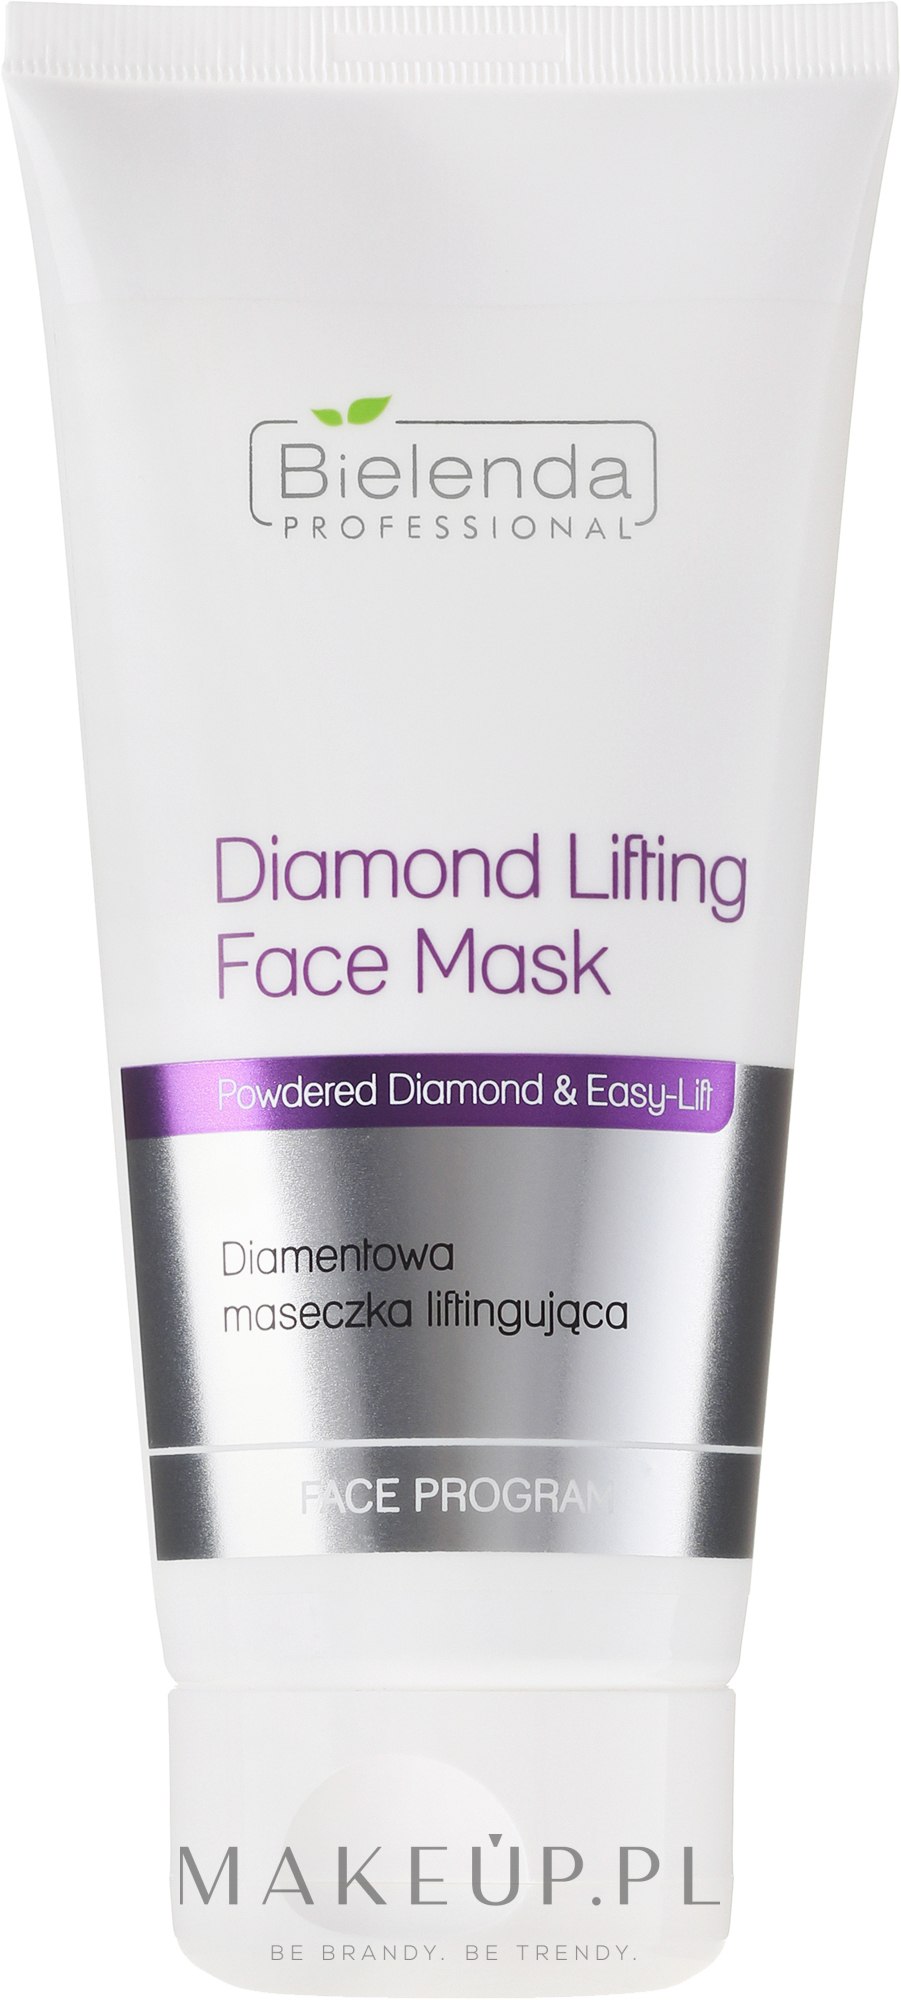 Diamentowa maseczka liftingująca do cery dojrzałej - Bielenda Professional Face Program Diamond Lifting Face Mask — Zdjęcie 175 ml